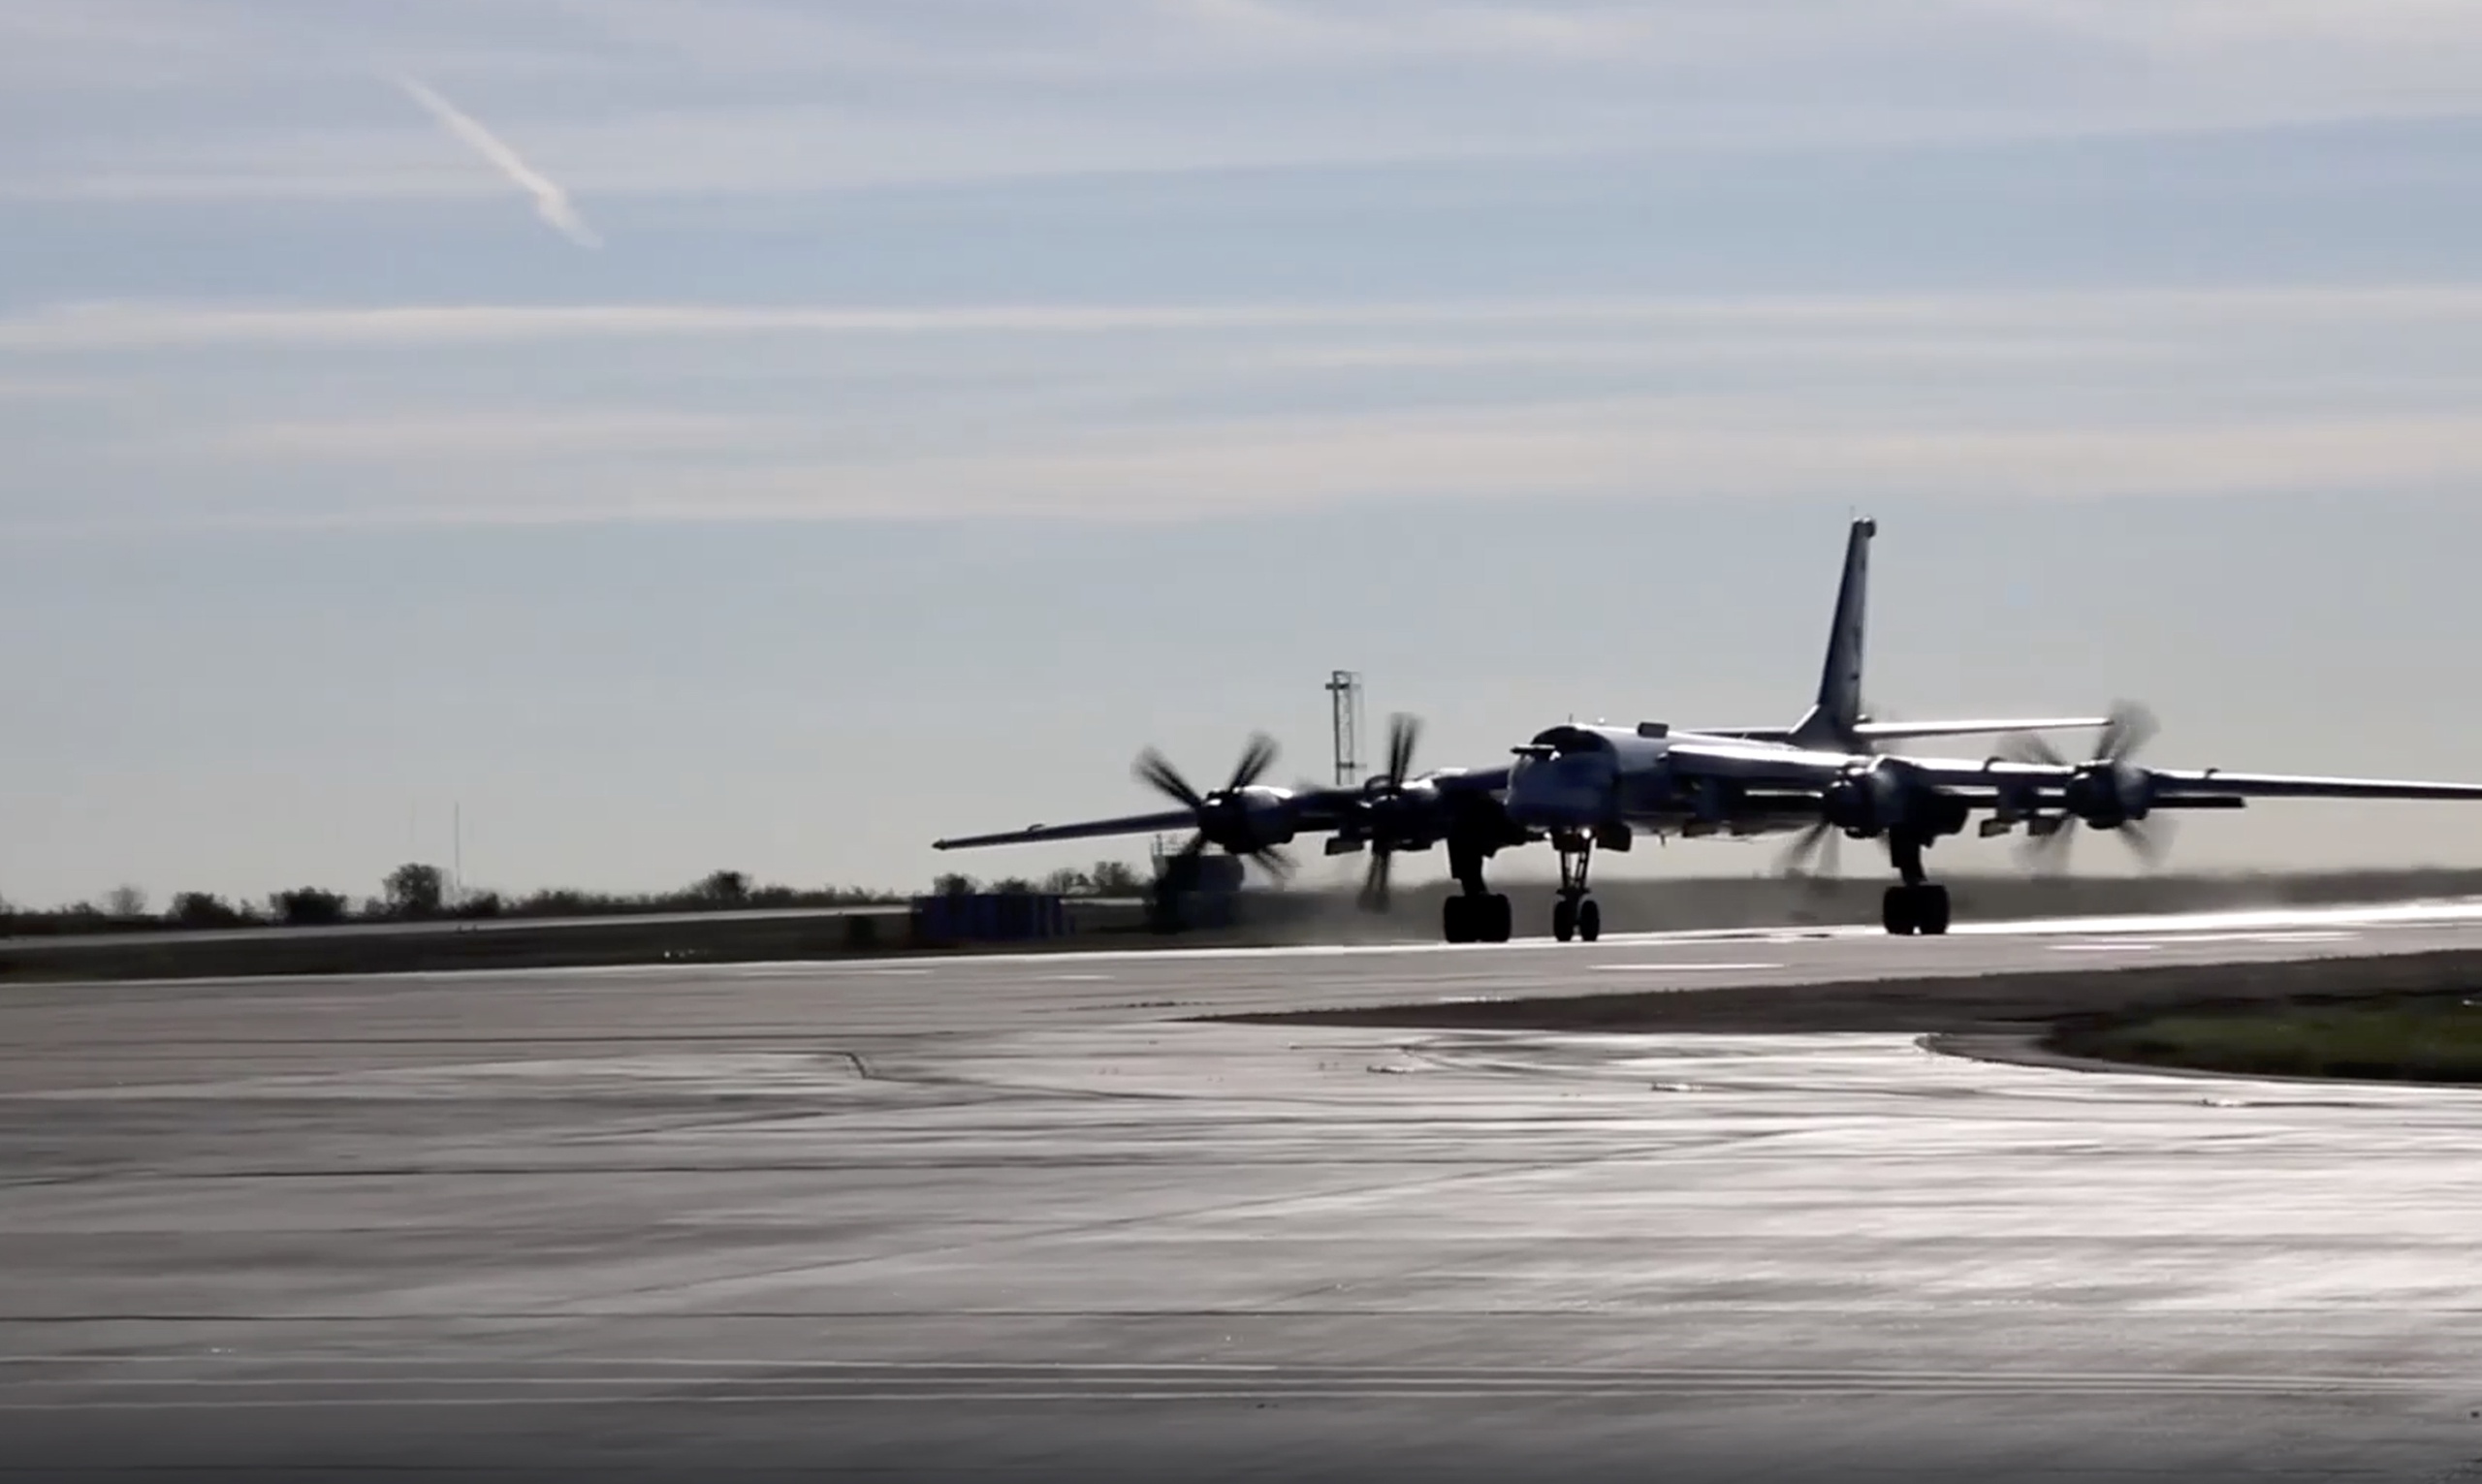 Een Russische TU-95 langeafstandsbommenwerper. Volgens Russische media en videobeelden op sociale media vond maandagochtend vroeg een explosie plaats op de luchtmachtbasis Engels-2 in de Russische regio Saratov, waar Tu-95 bommenwerpers staan die hebben deelgenomen aan aanvallen met kruisraketten tegen Oekraïne. 